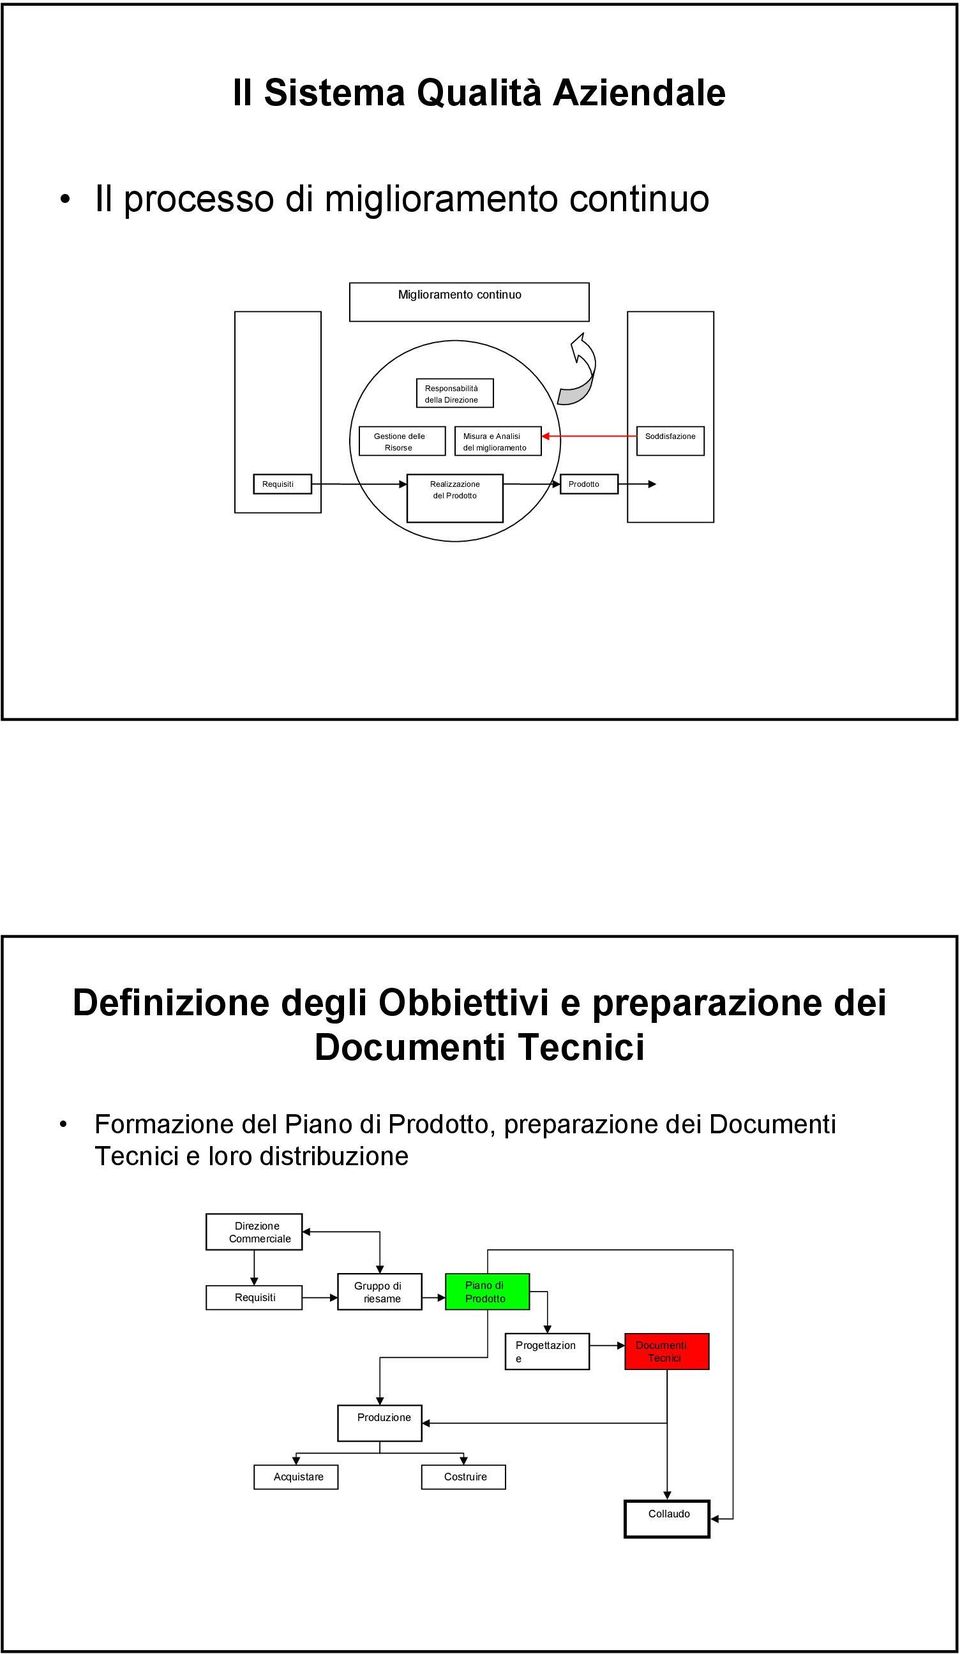 Obbiettivi e preparazione dei Documenti Tecnici Formazione del Piano di Prodotto, preparazione dei Documenti Tecnici e loro